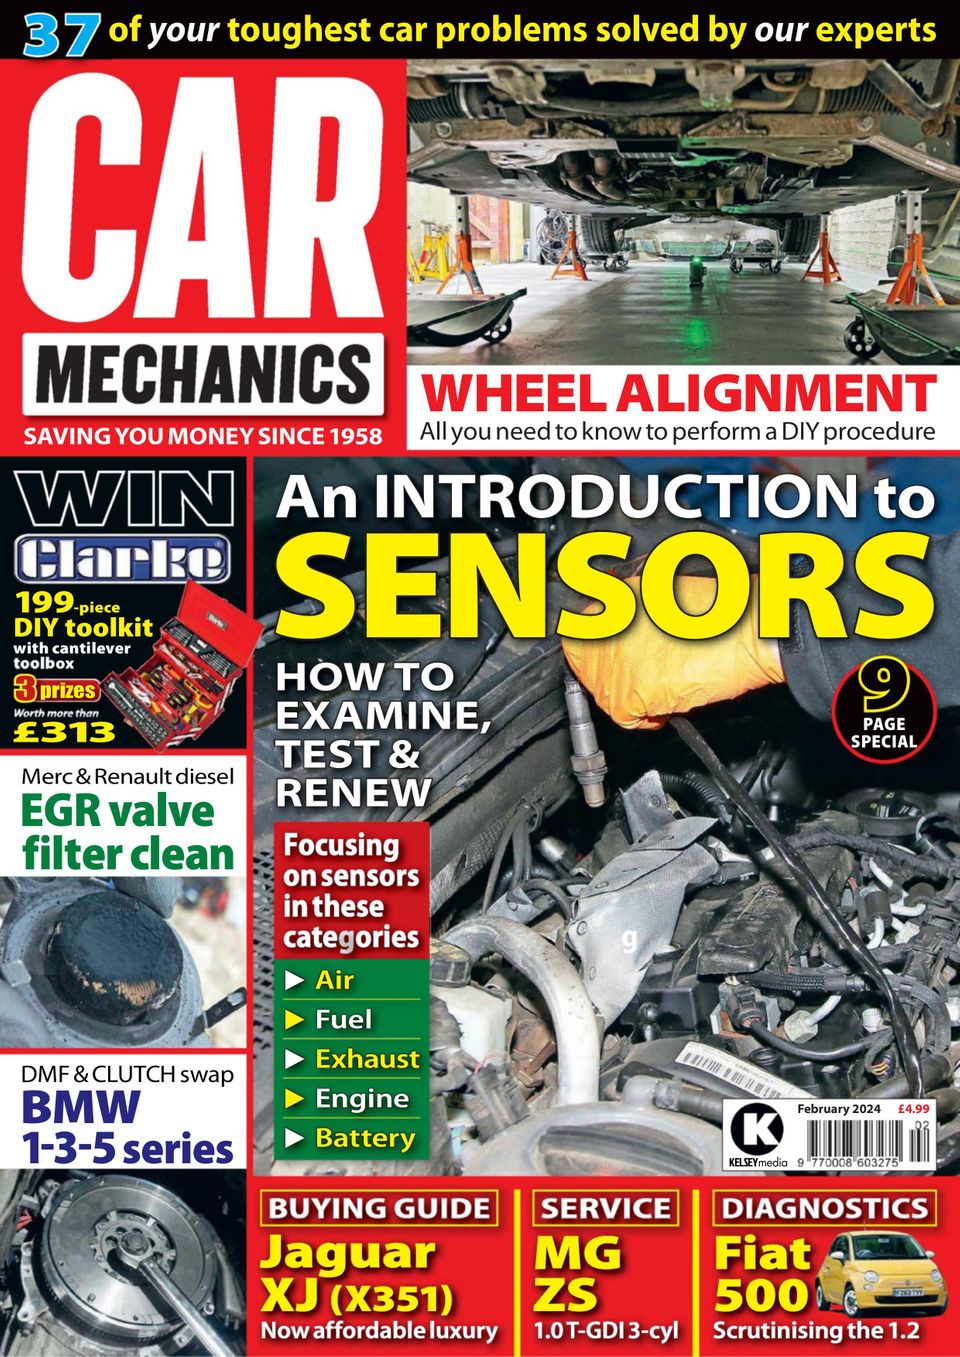 1304954 Car Mechanics Cover February 2024 Issue 